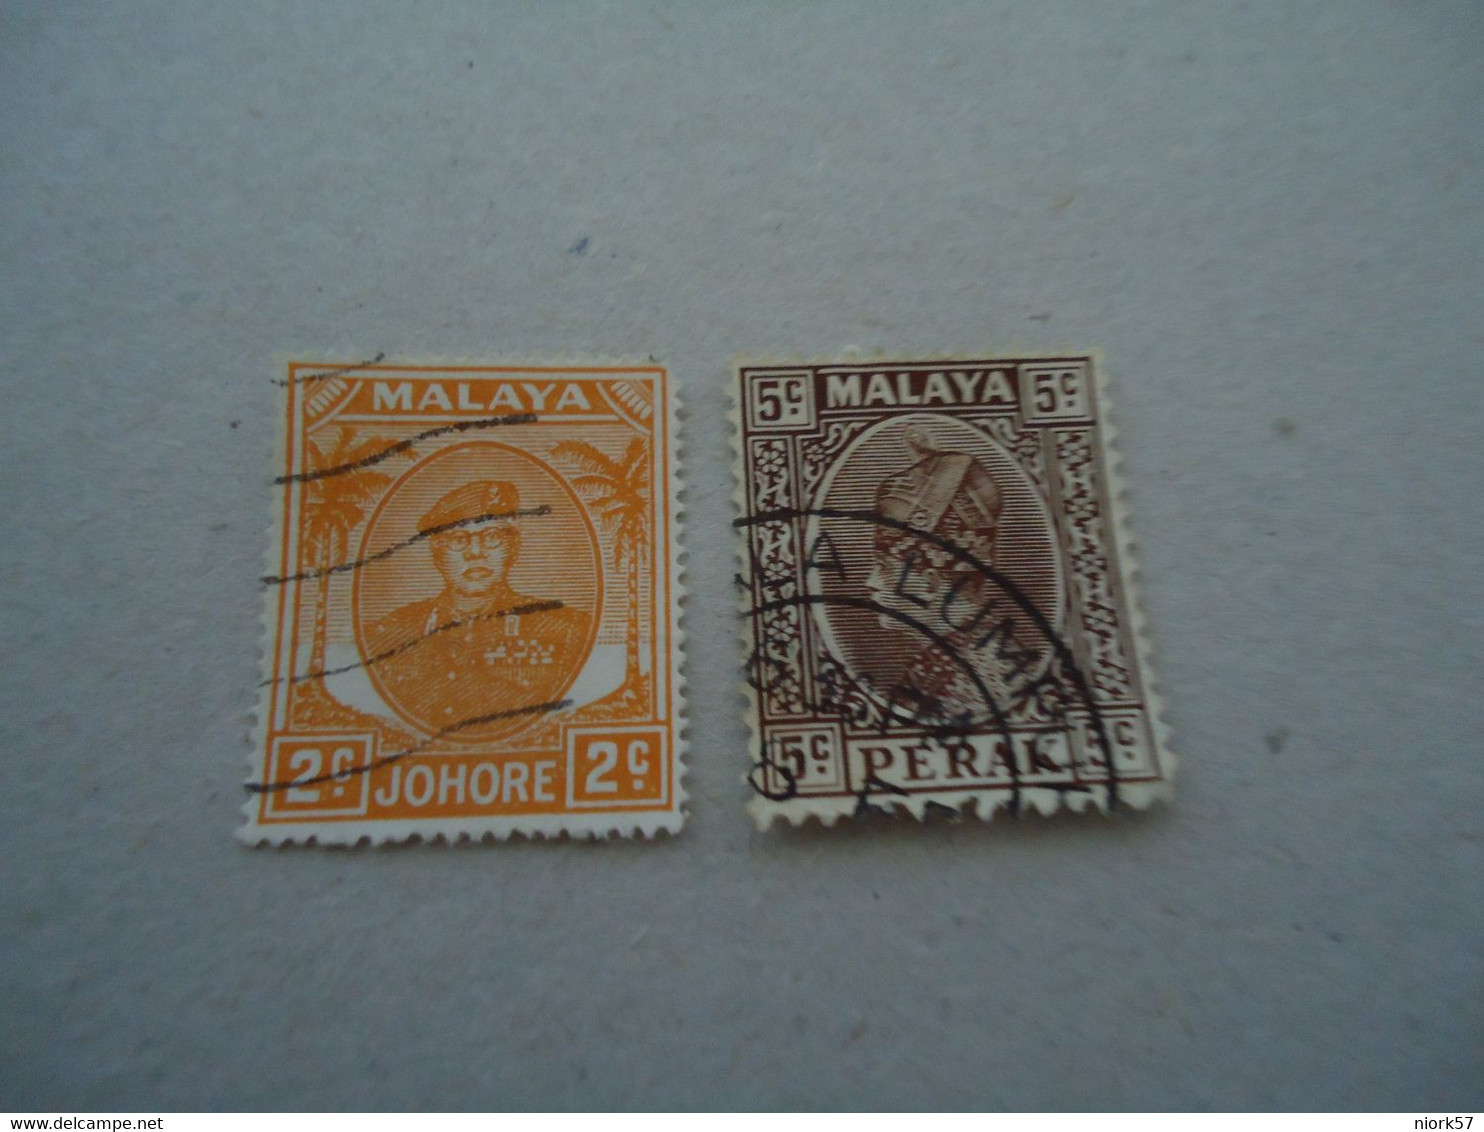 MALAY   USED   STAMPS KING POSTMARK - Malayan Postal Union